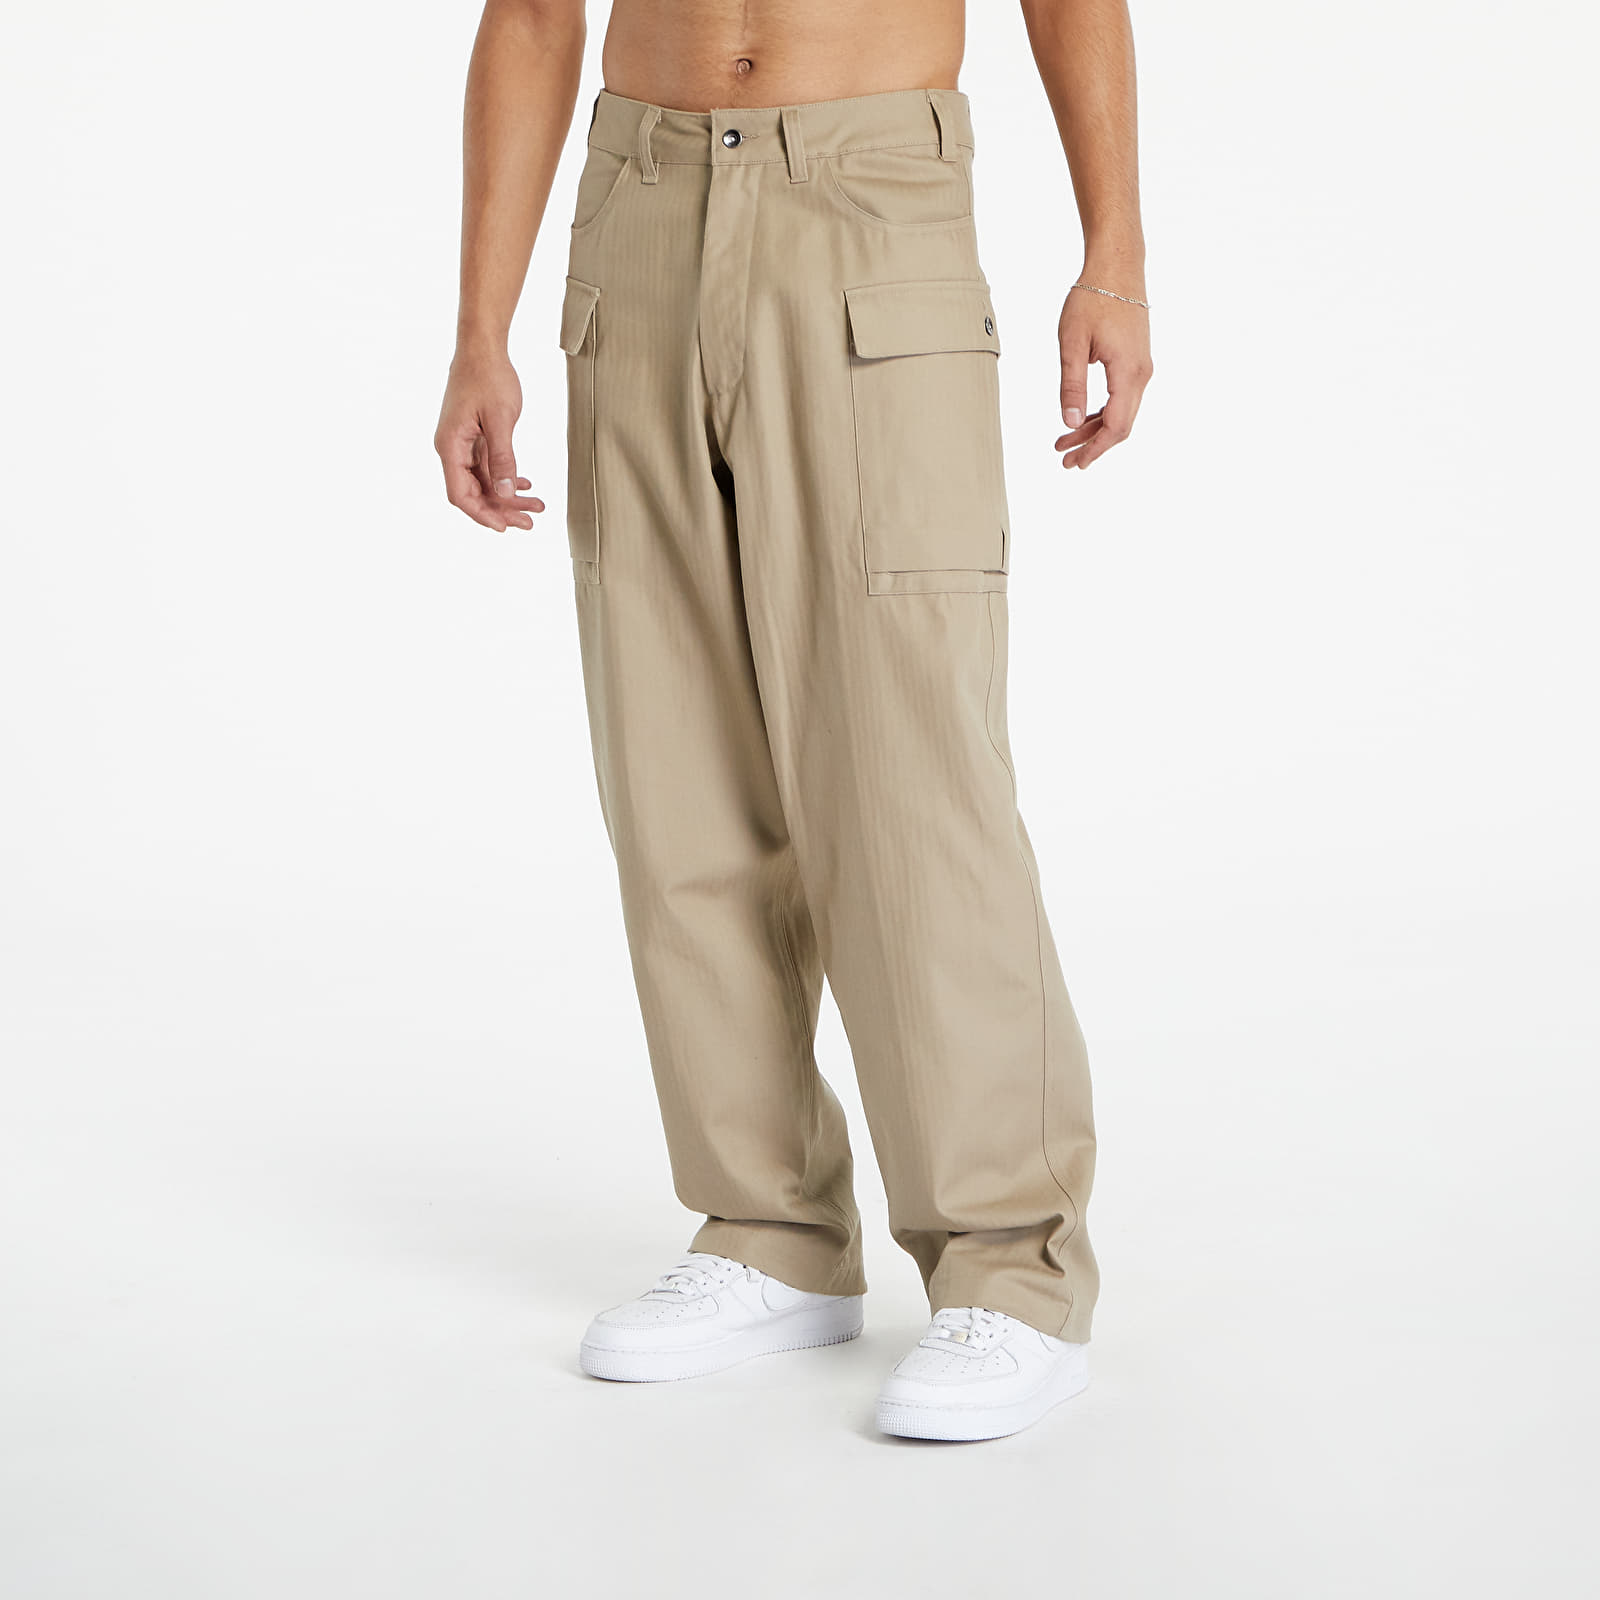 Džíny a kalhoty Nike Life Men's Cargo Pants Khaki/ Khaki